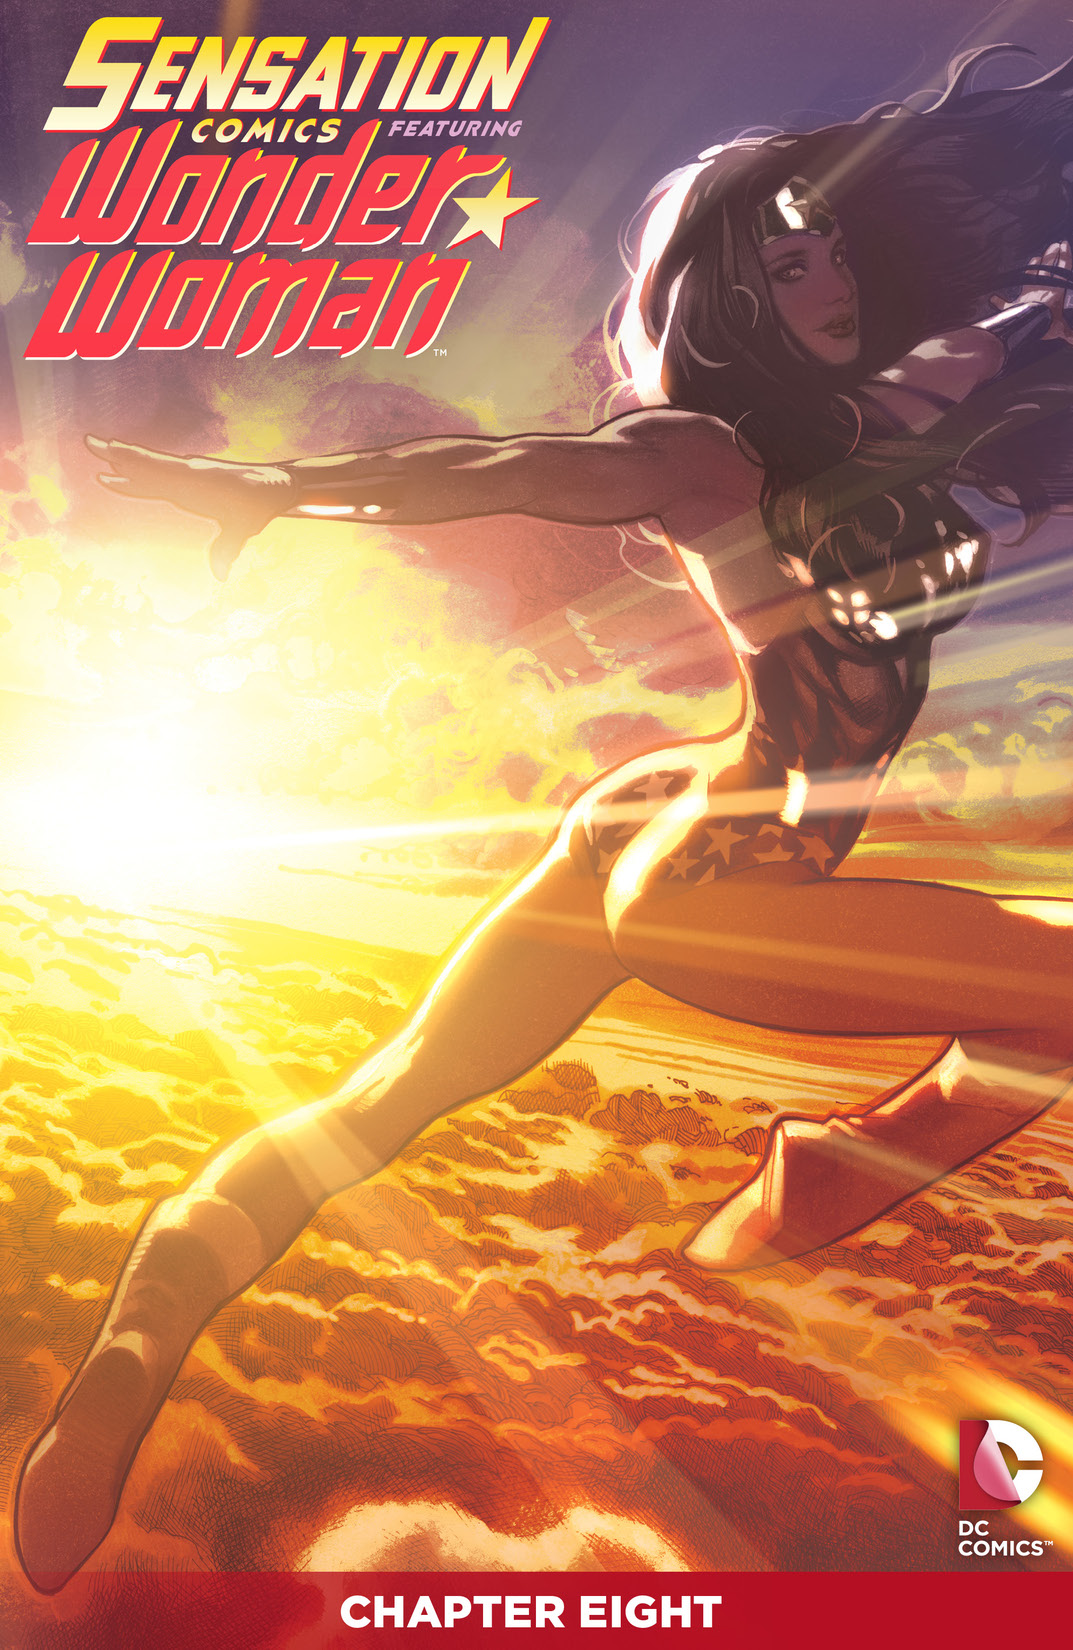 Sensation Comics Featuring Wonder Woman #8 preview images